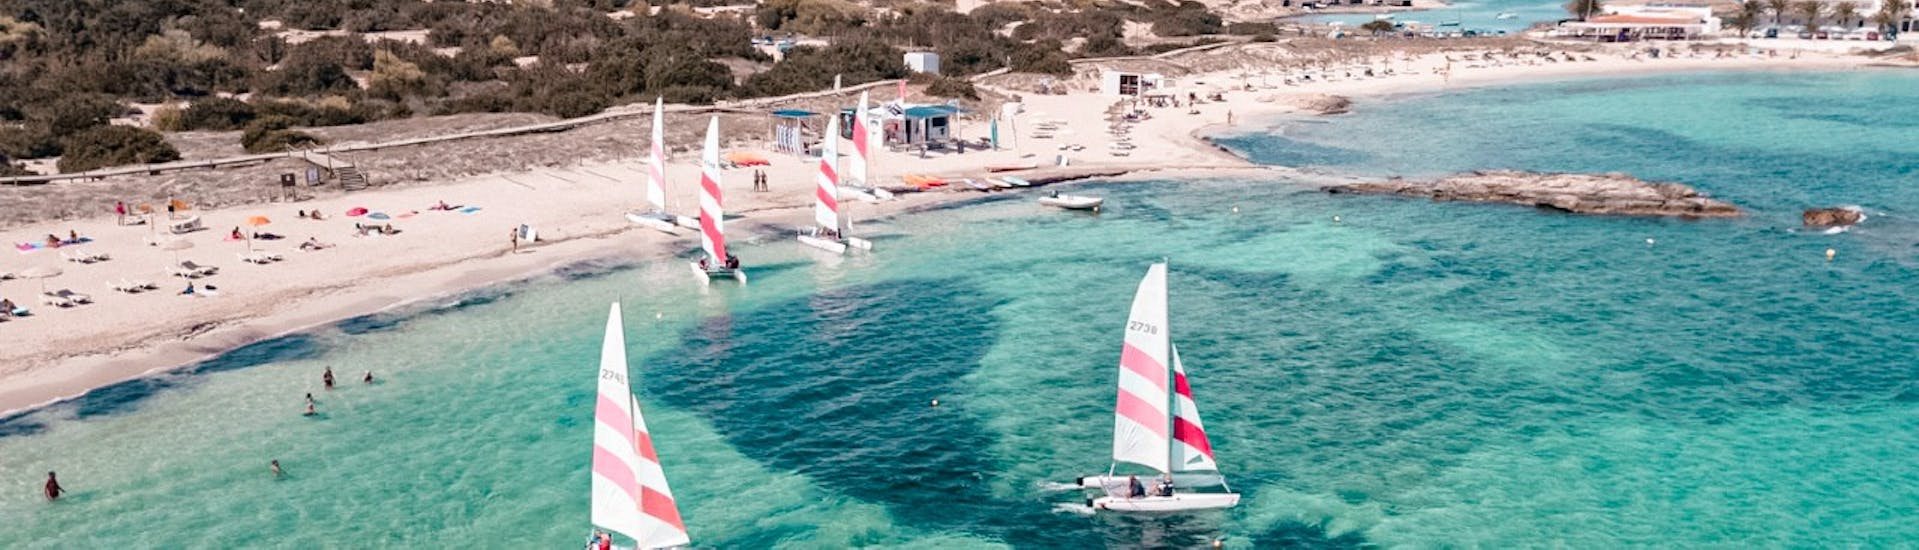 Noleggio di barche a vela a Formentera (fino a 3 persone) senza patente.